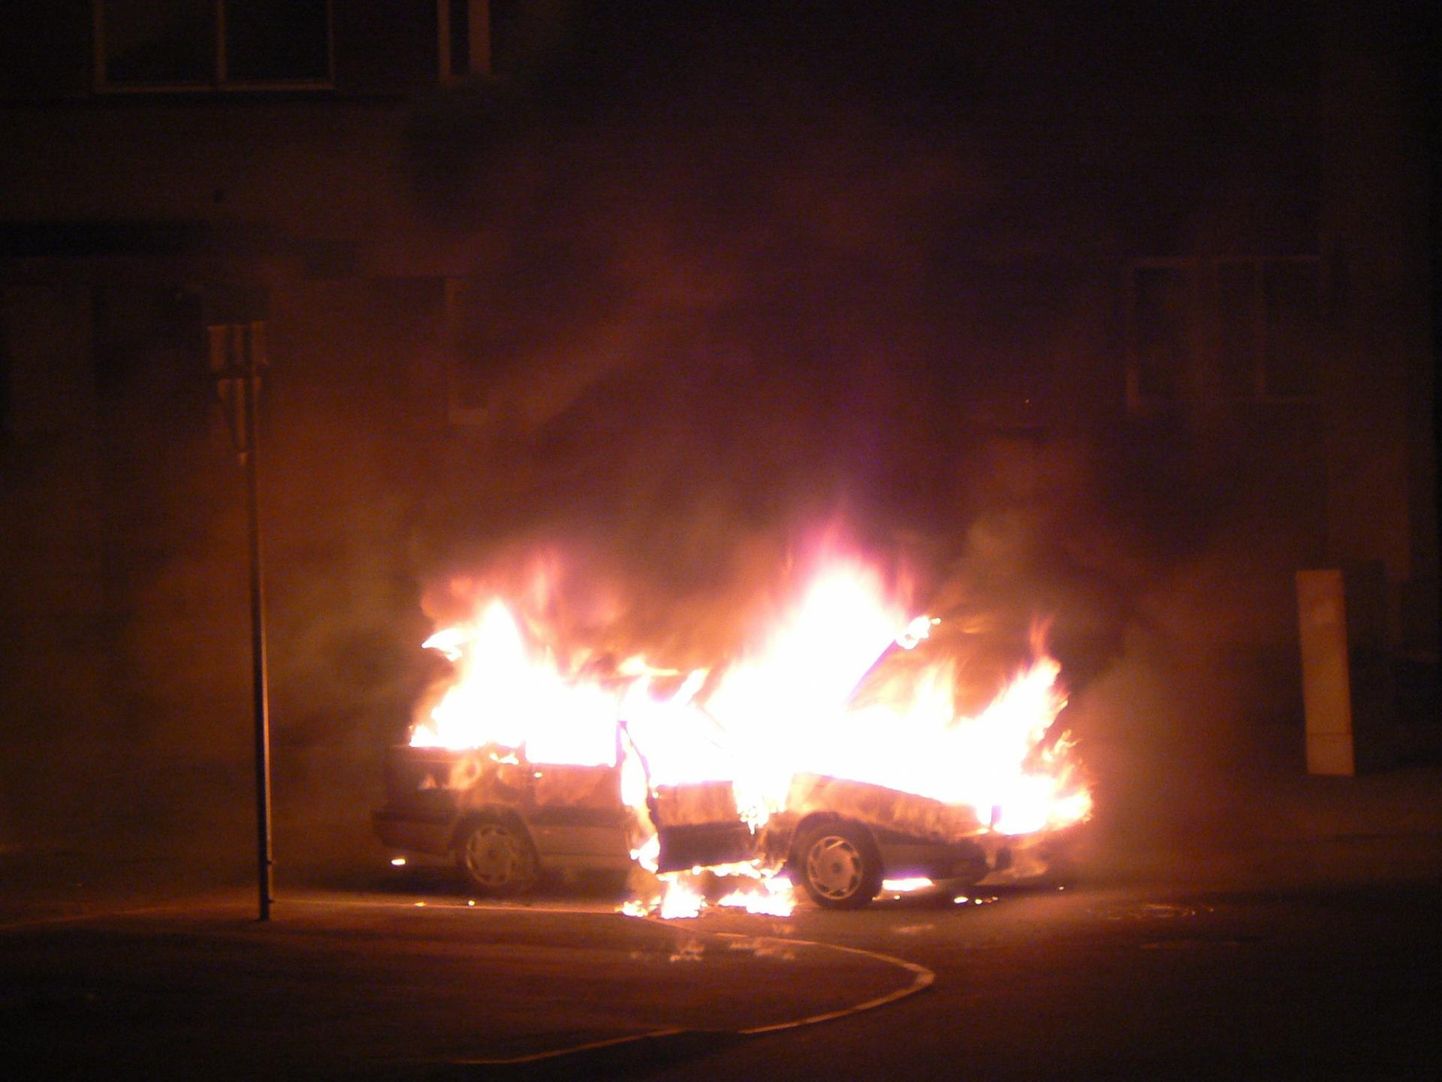 Сегодня ночью в Пярну около магазина строительных материалов Bauhof загорелся легковой автомобиль. Иллюстративное фото.